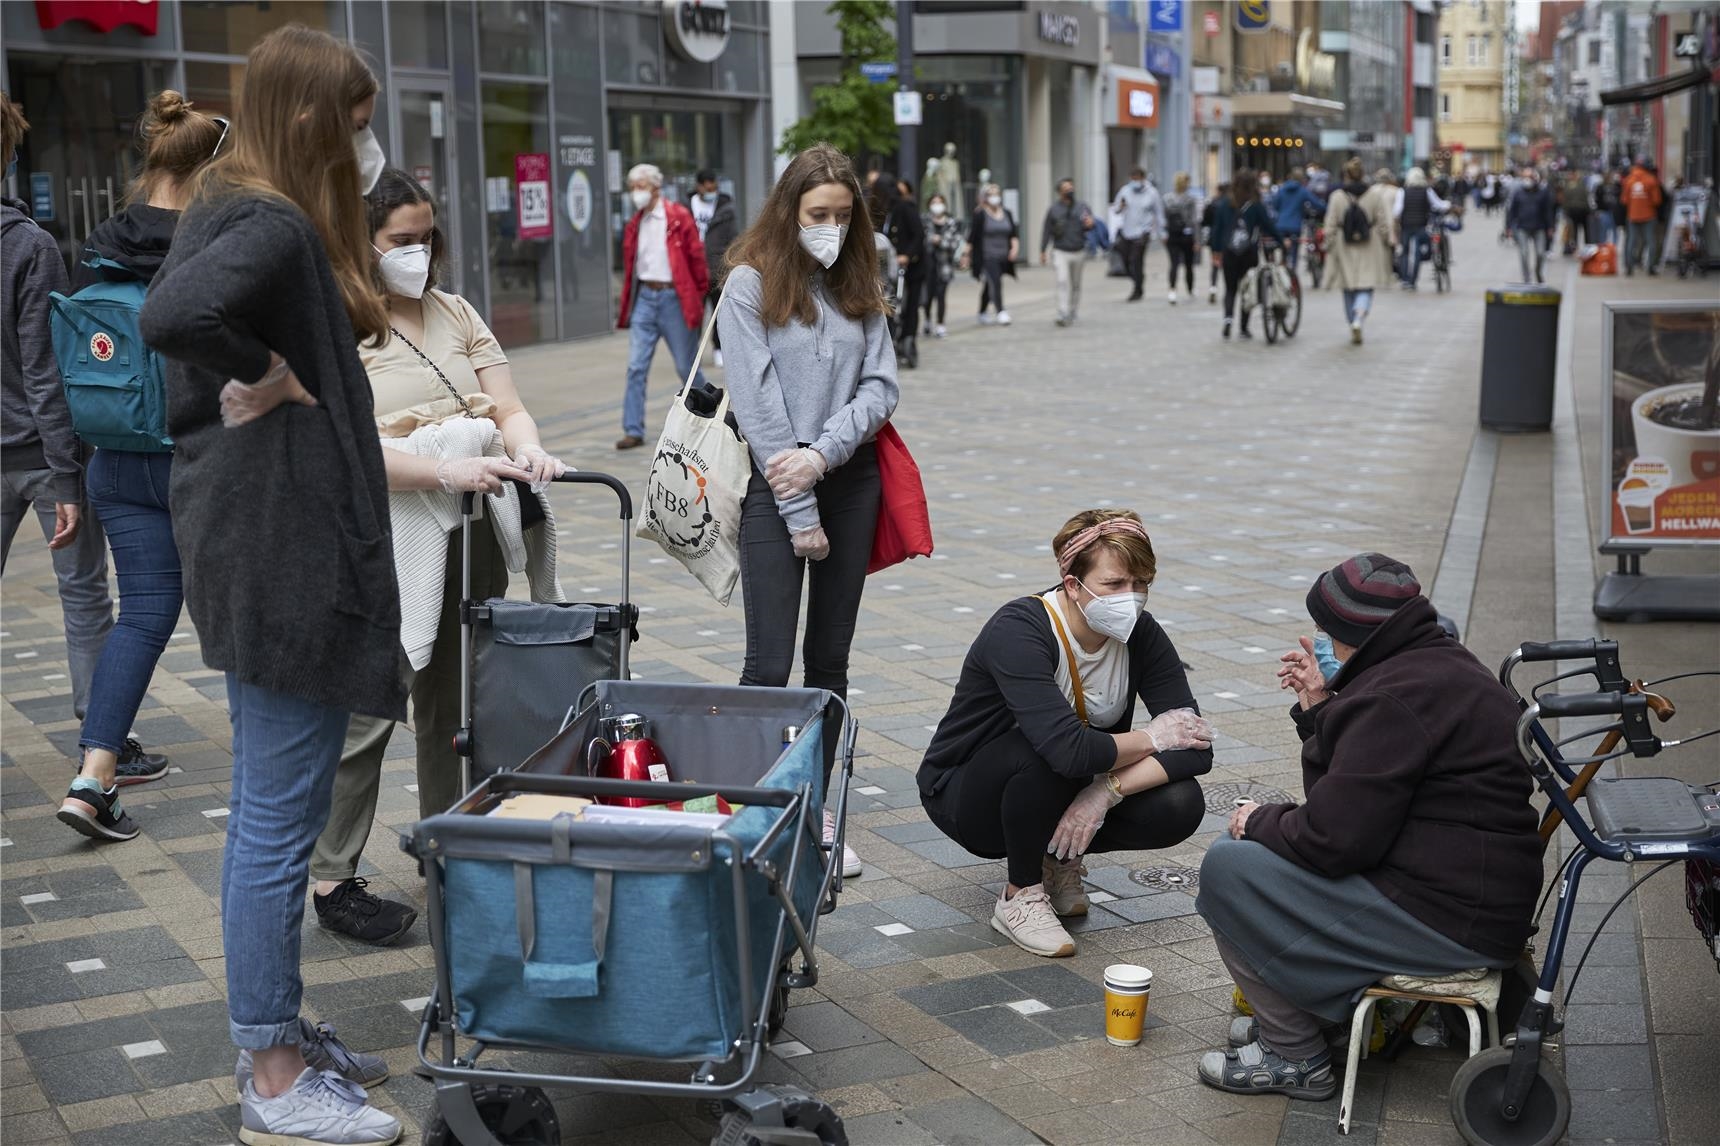 Szene in der Fußgängerzone - Engagierte sprechen mit Wohnungslosen (youngcaritas Dortmund)